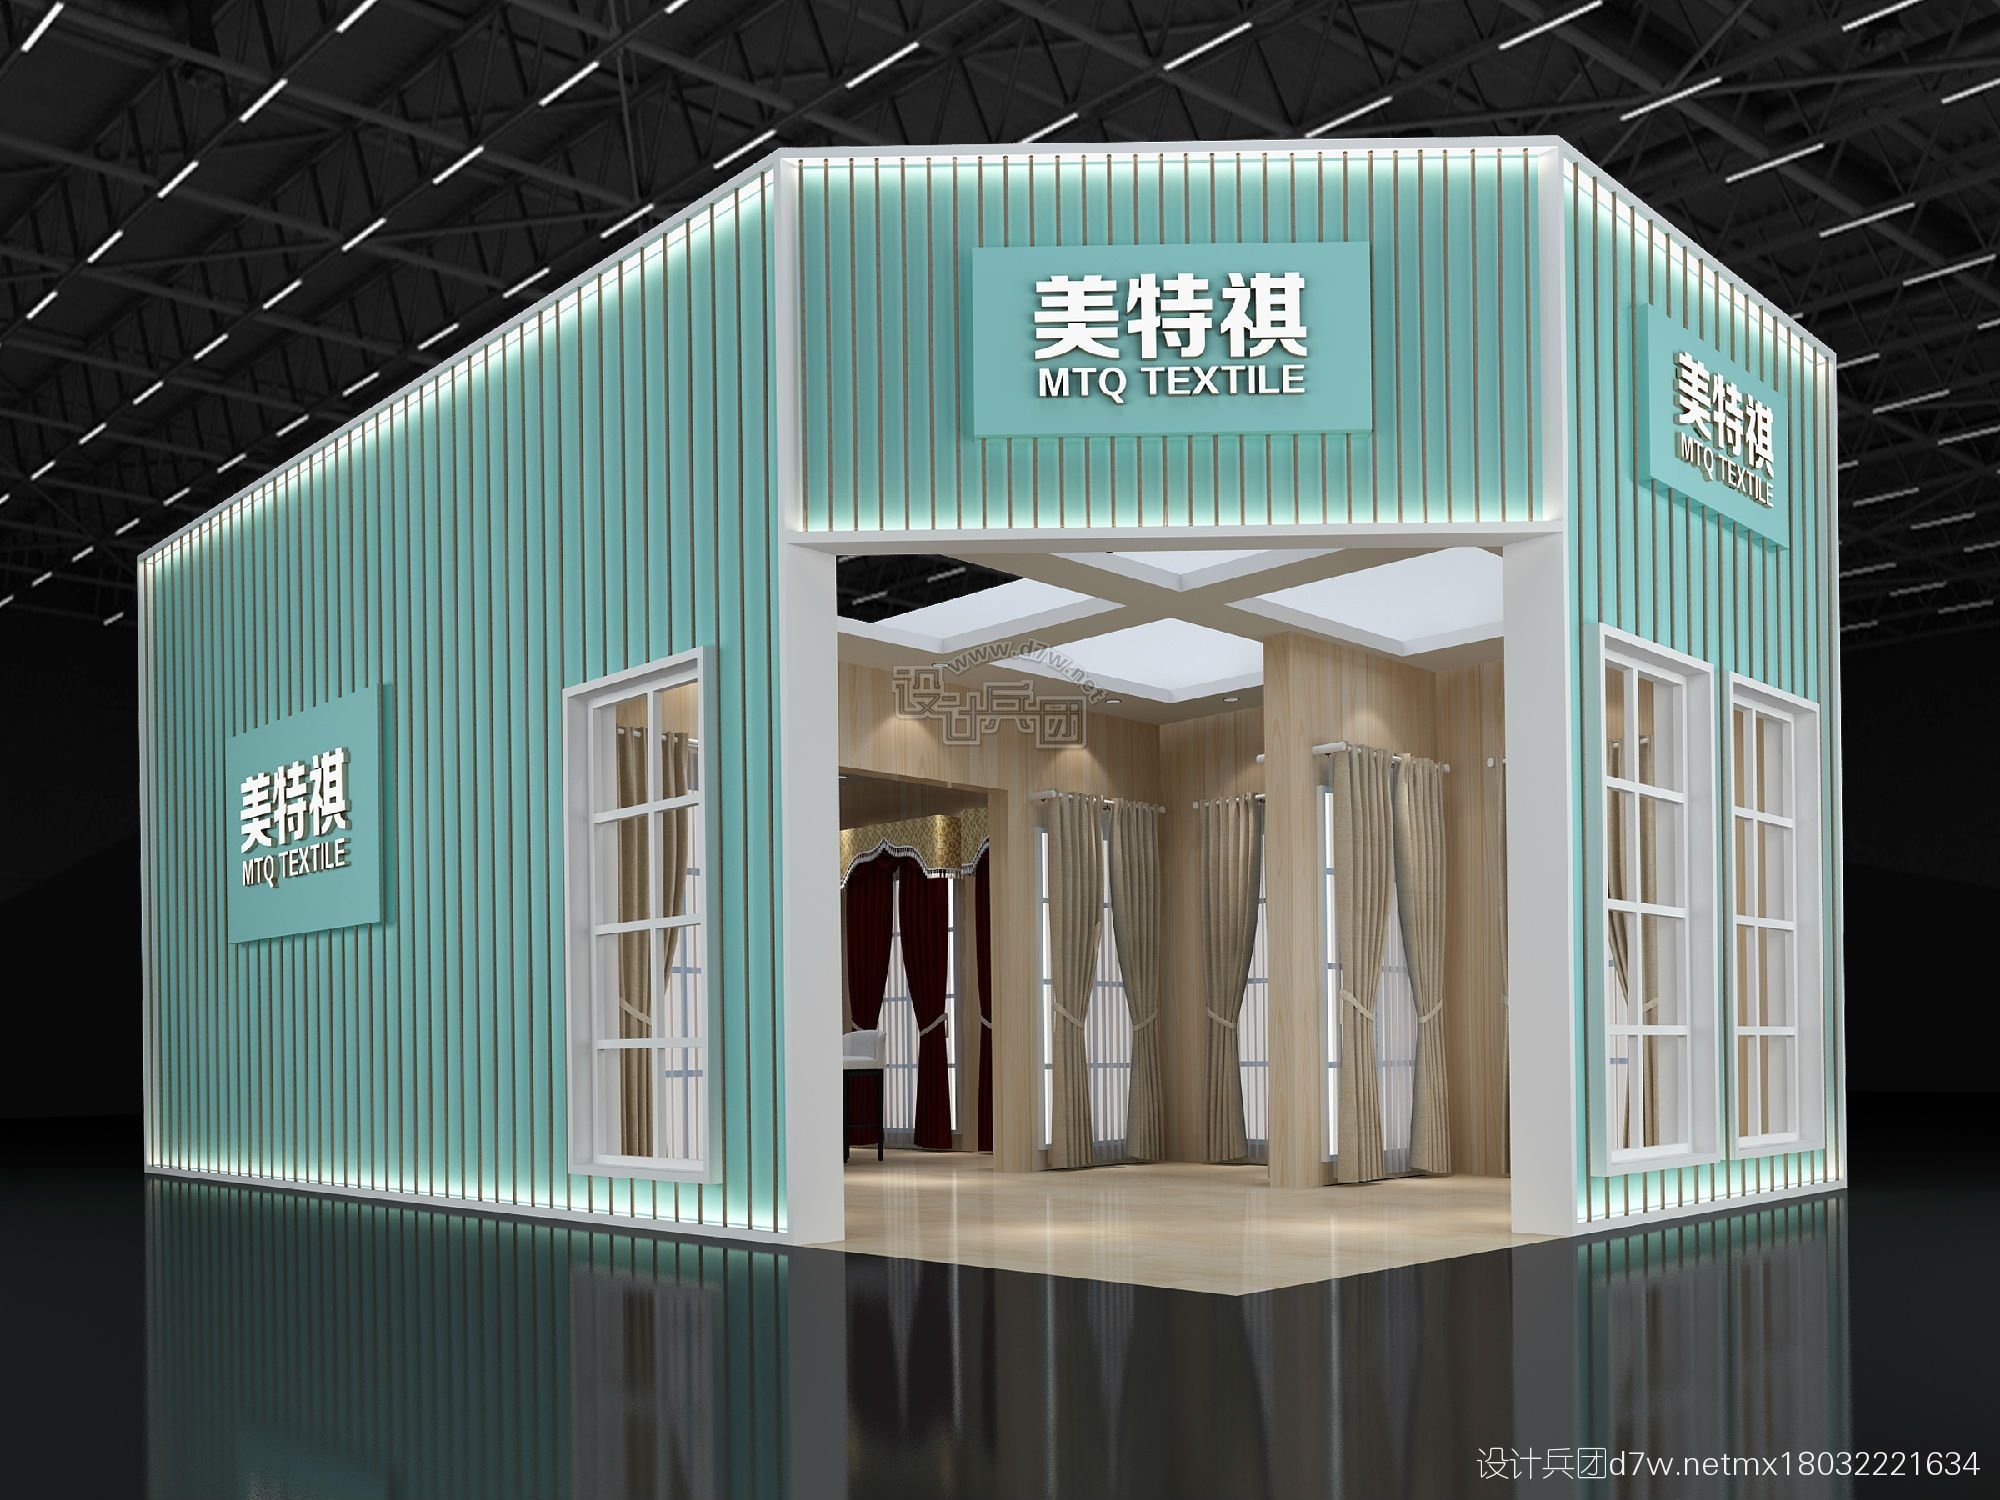 中国上海窗帘布艺展览会天亿坊展位设计 on Behance